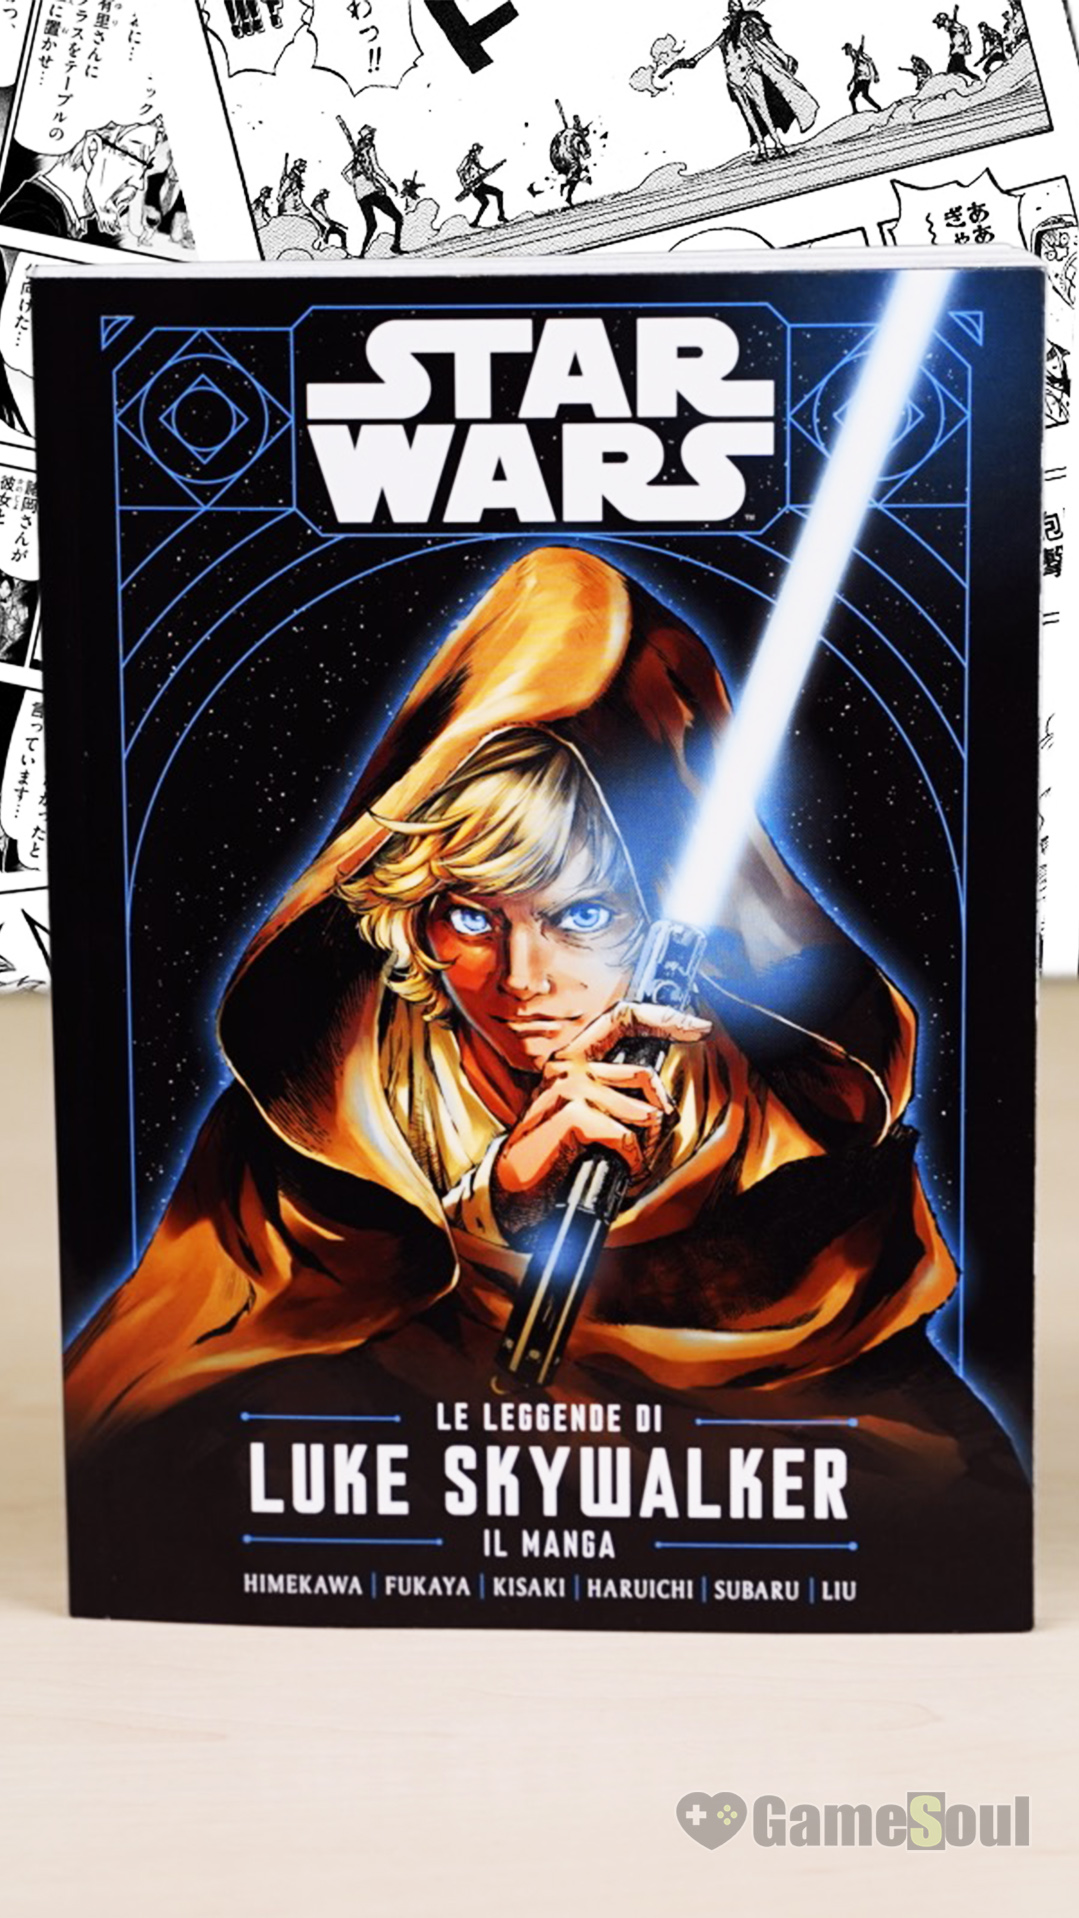 Le Leggende di Luke Skywalker